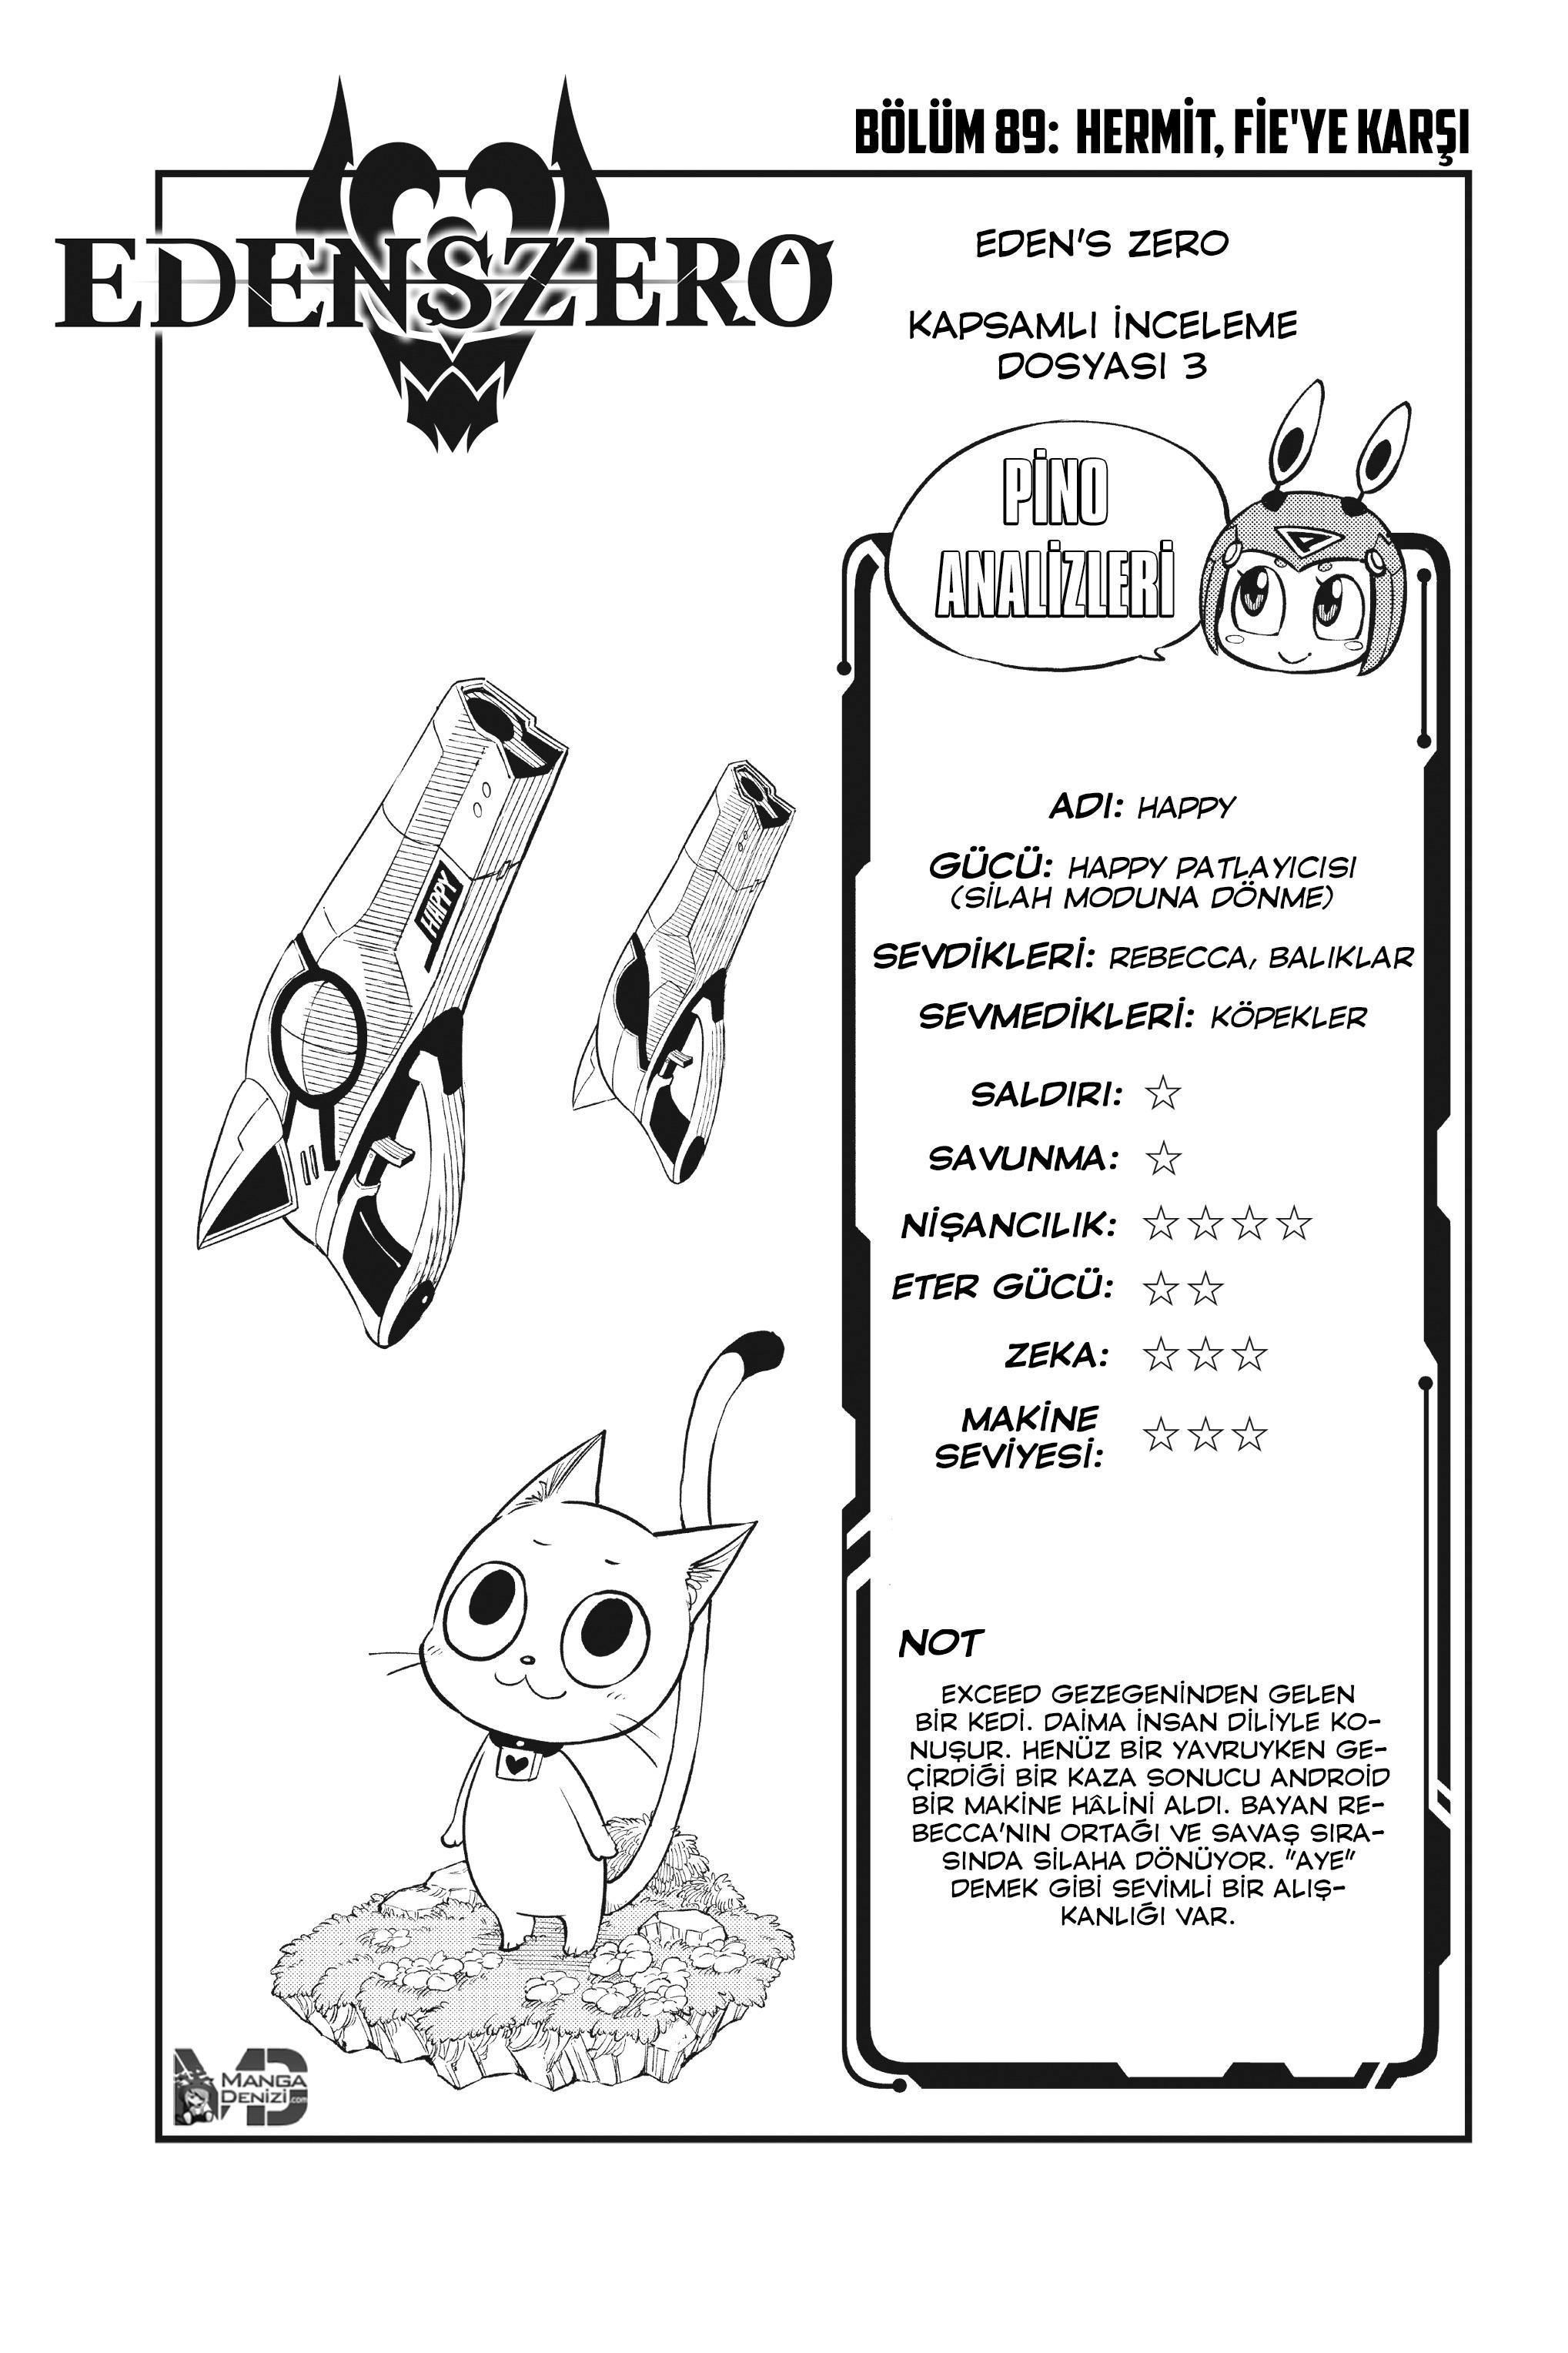 Eden's Zero mangasının 089 bölümünün 2. sayfasını okuyorsunuz.